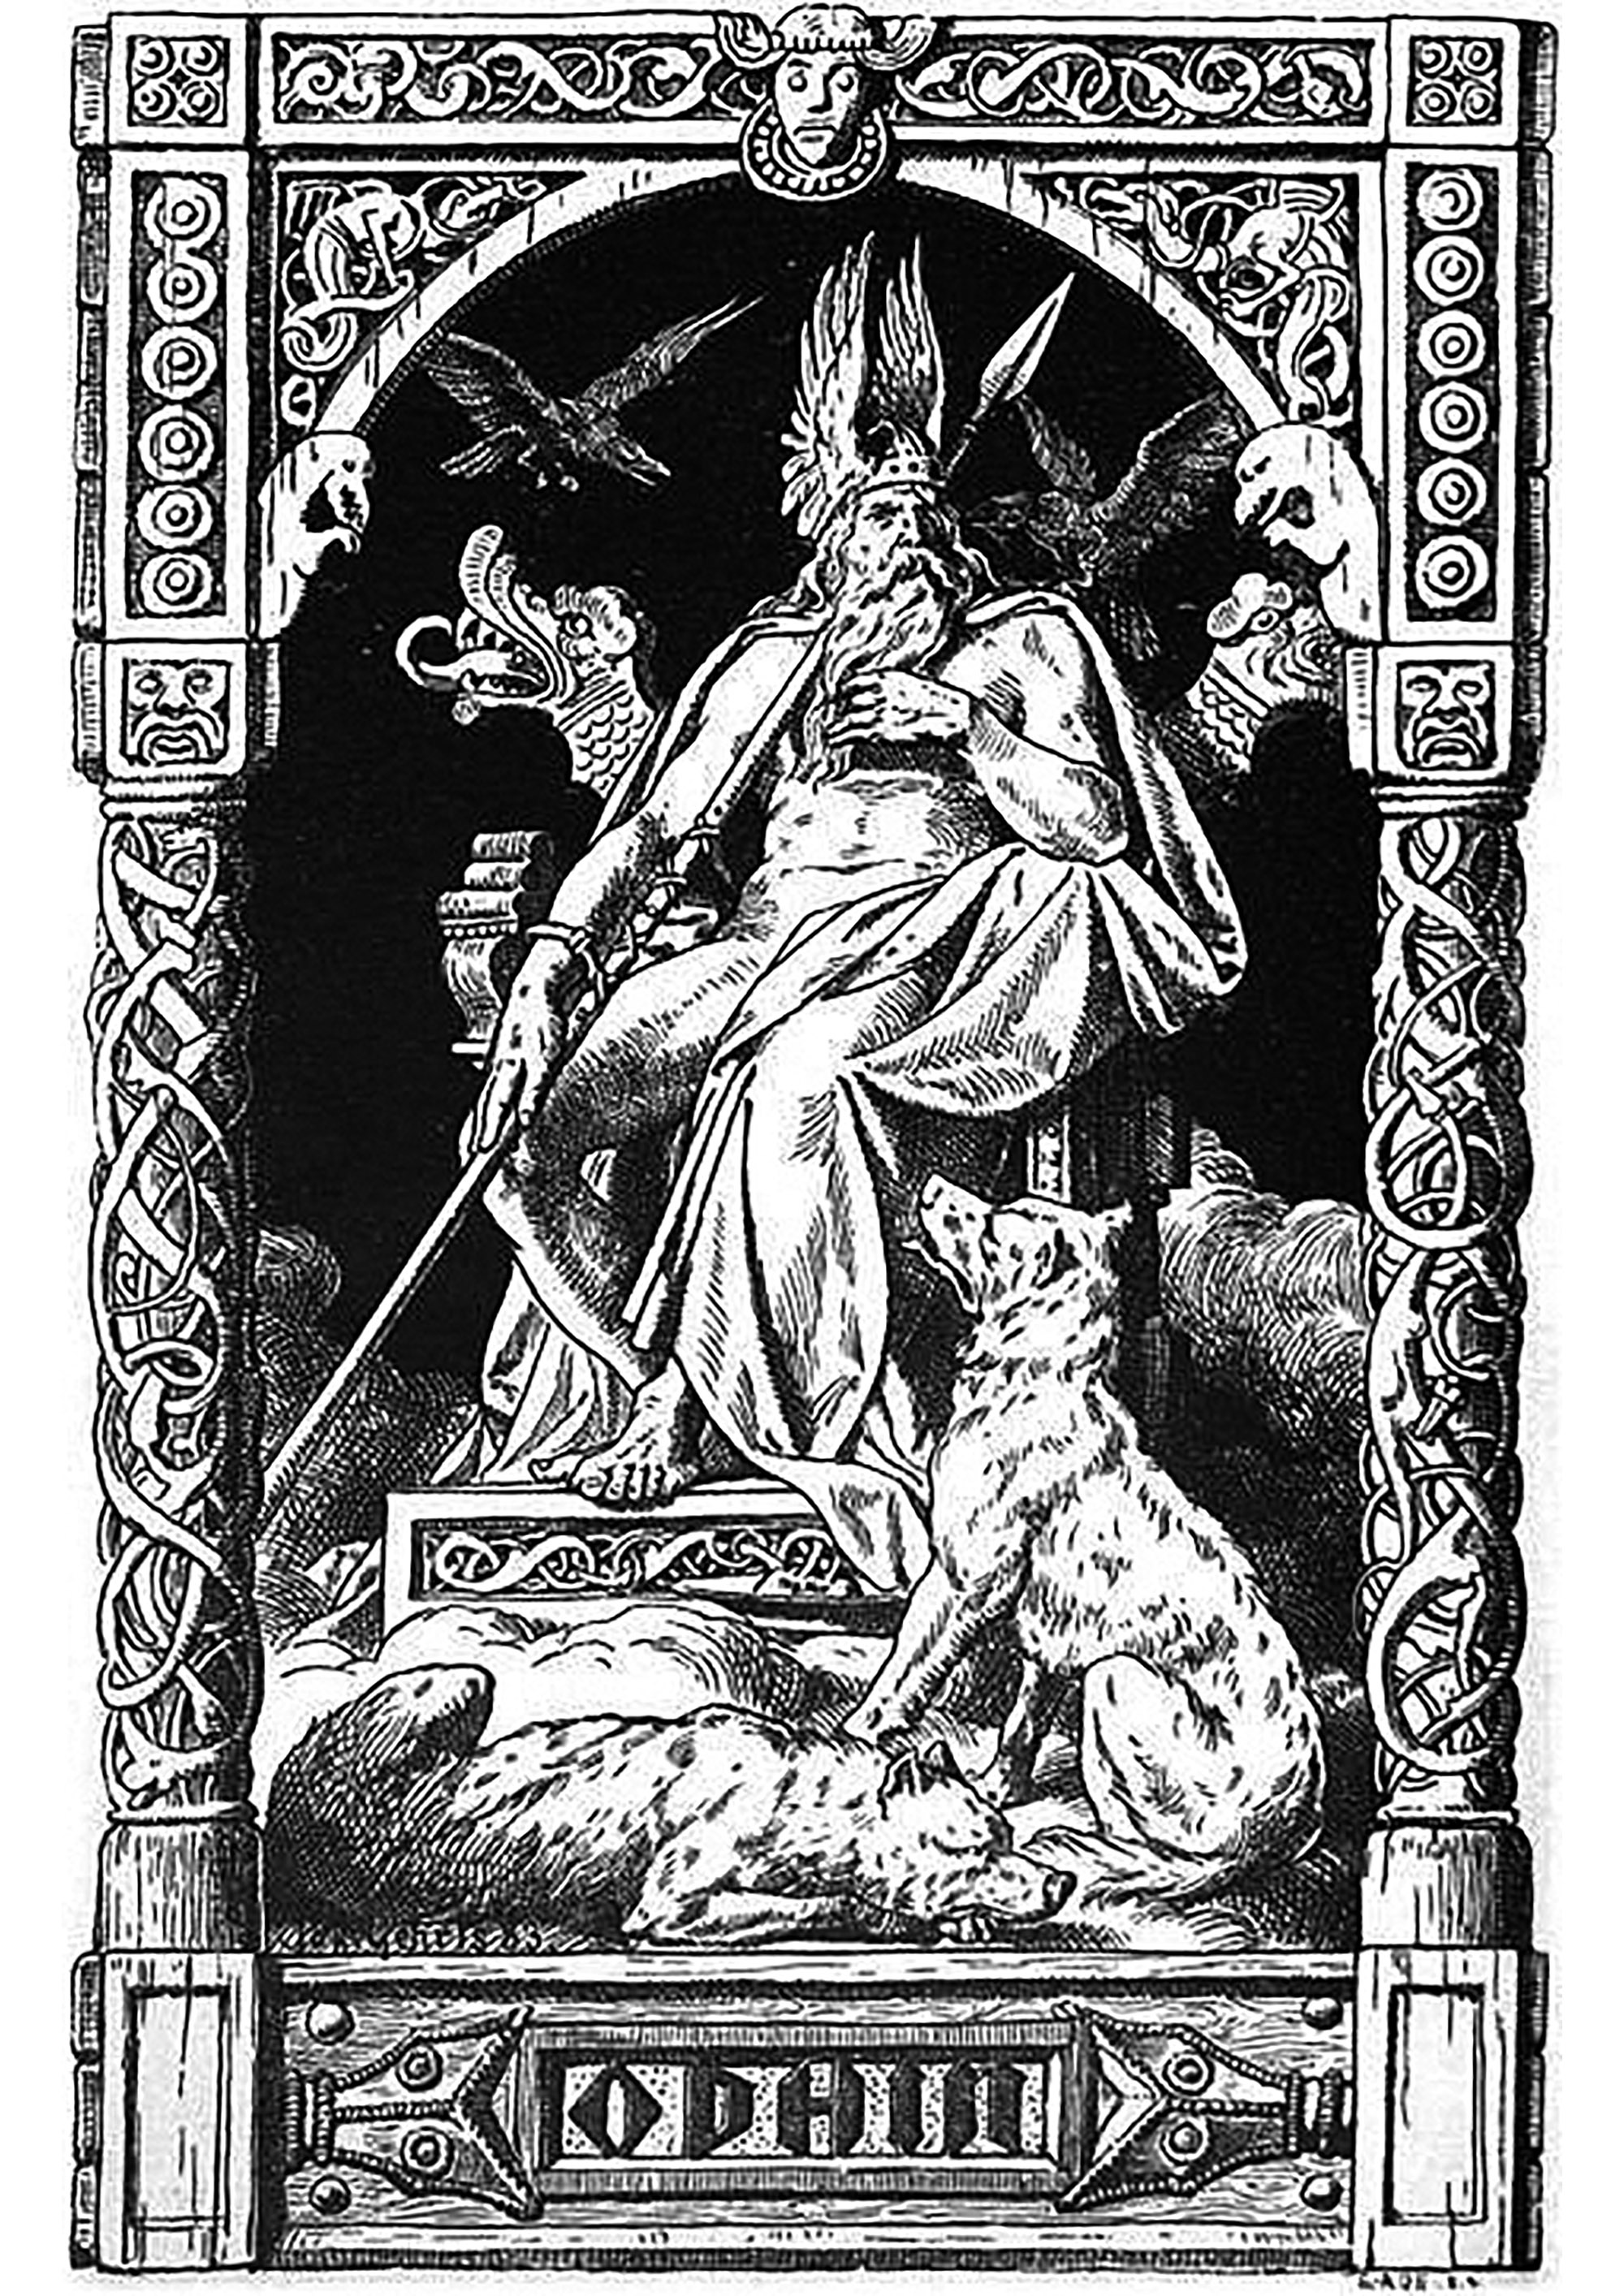 Odin - illustration de Johannes Gehrts (1855, 1921). Dans cette illustration, on peut voir Odin, Dieu principal de la mythologie nordique, trônant sur son trône. Il est vêtu d'une longue robe et d'une cape et il porte un casque et une lance.Il est entouré de ses deux corbeaux, Hugin et Munin, qui sont ses messagers et qui lui rapportent tout ce qui se passe dans le monde.